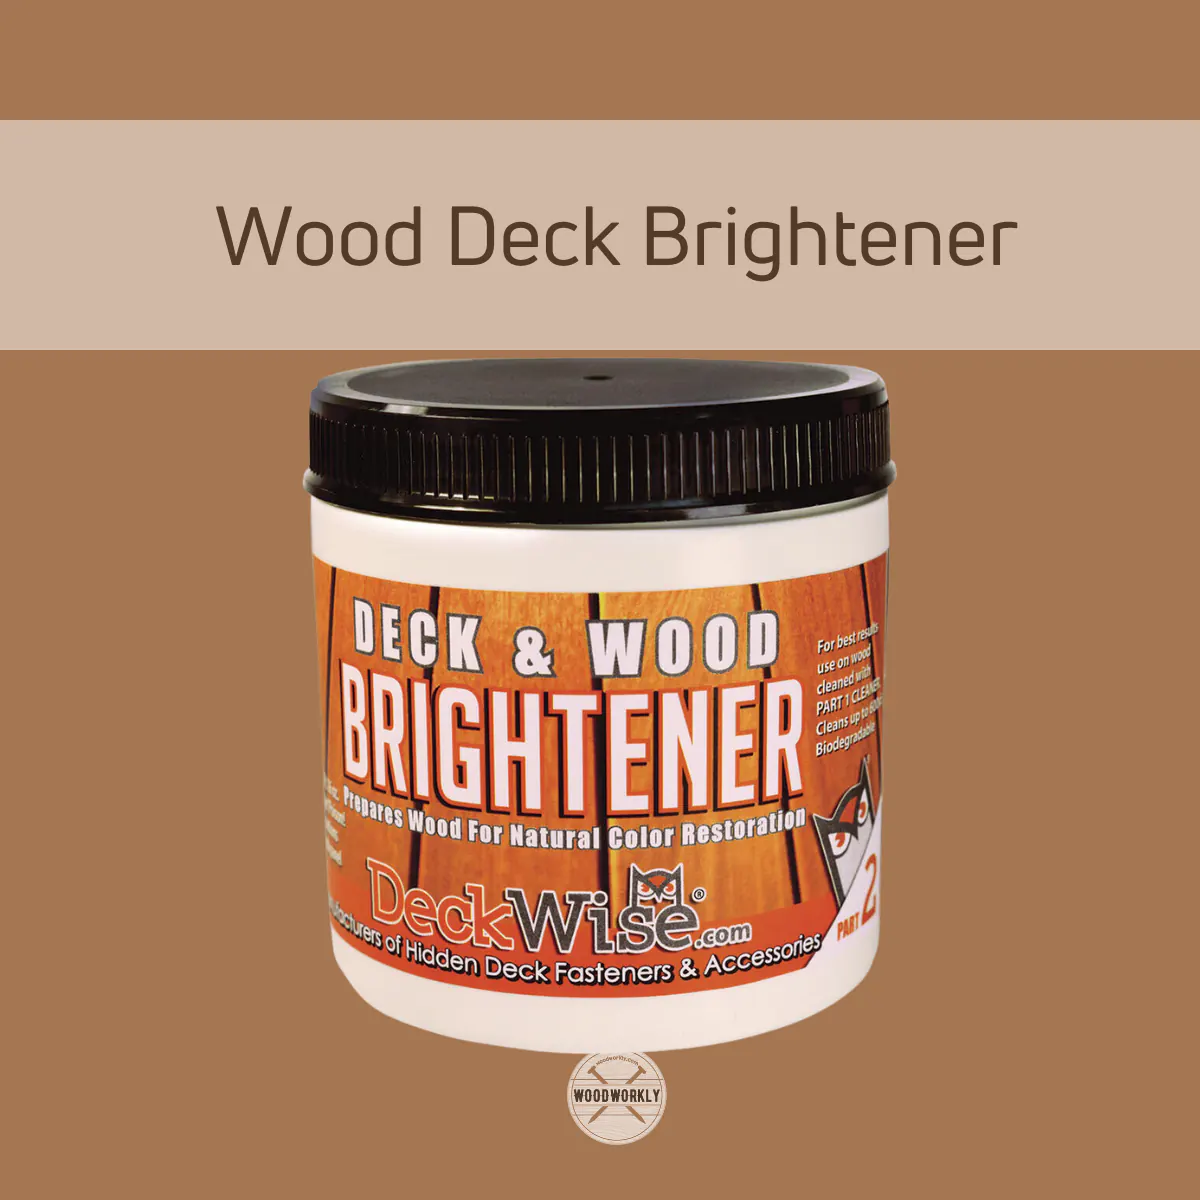 Wood Deck Brightener